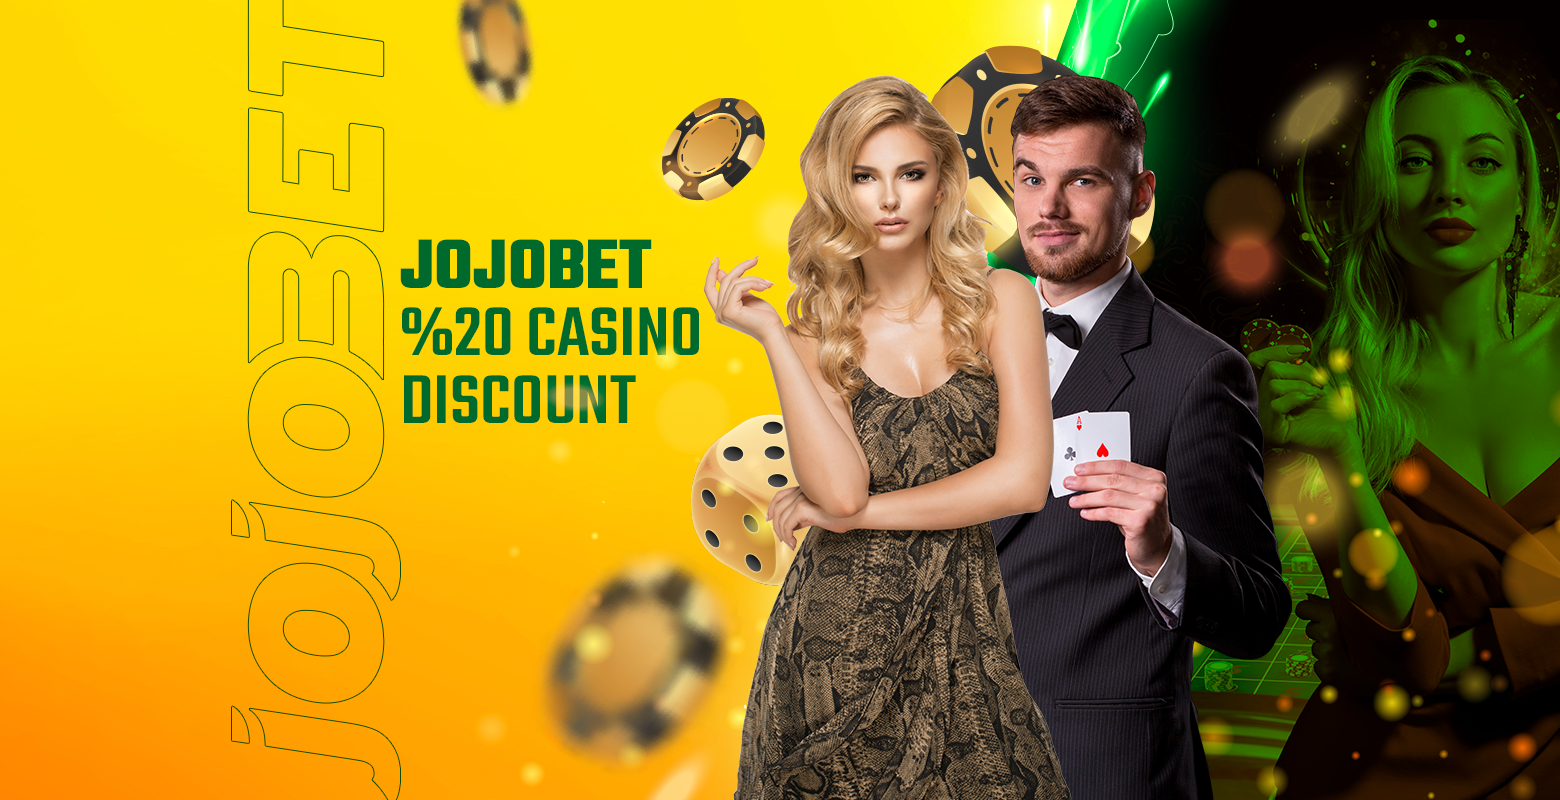 Jojobet %20 Casino Discount